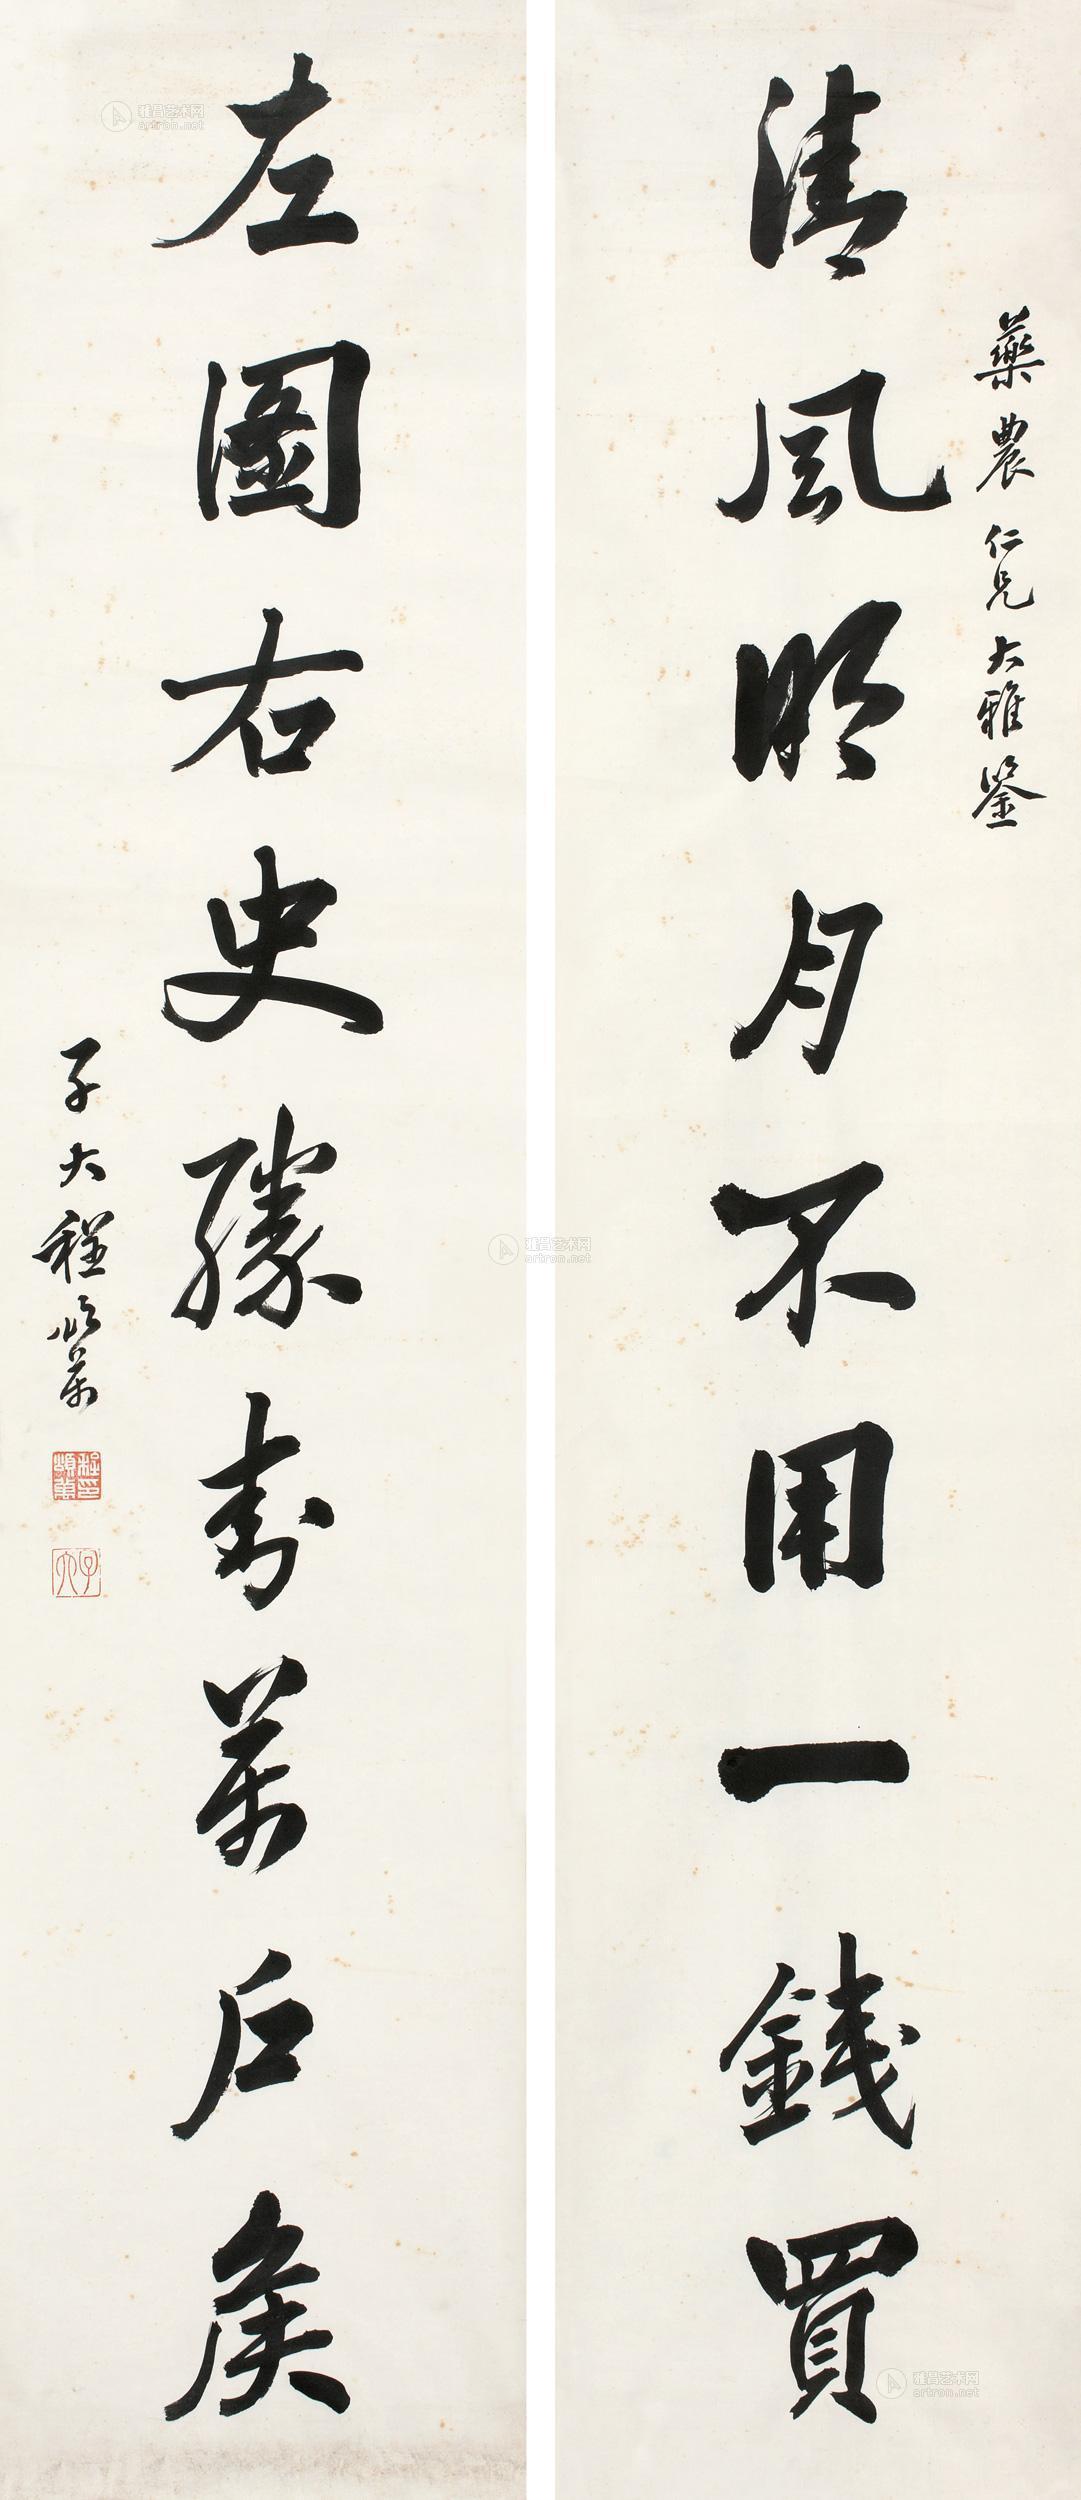 行书九言联 对联作者程颂万 (1865～1932)拍品分类中国书画